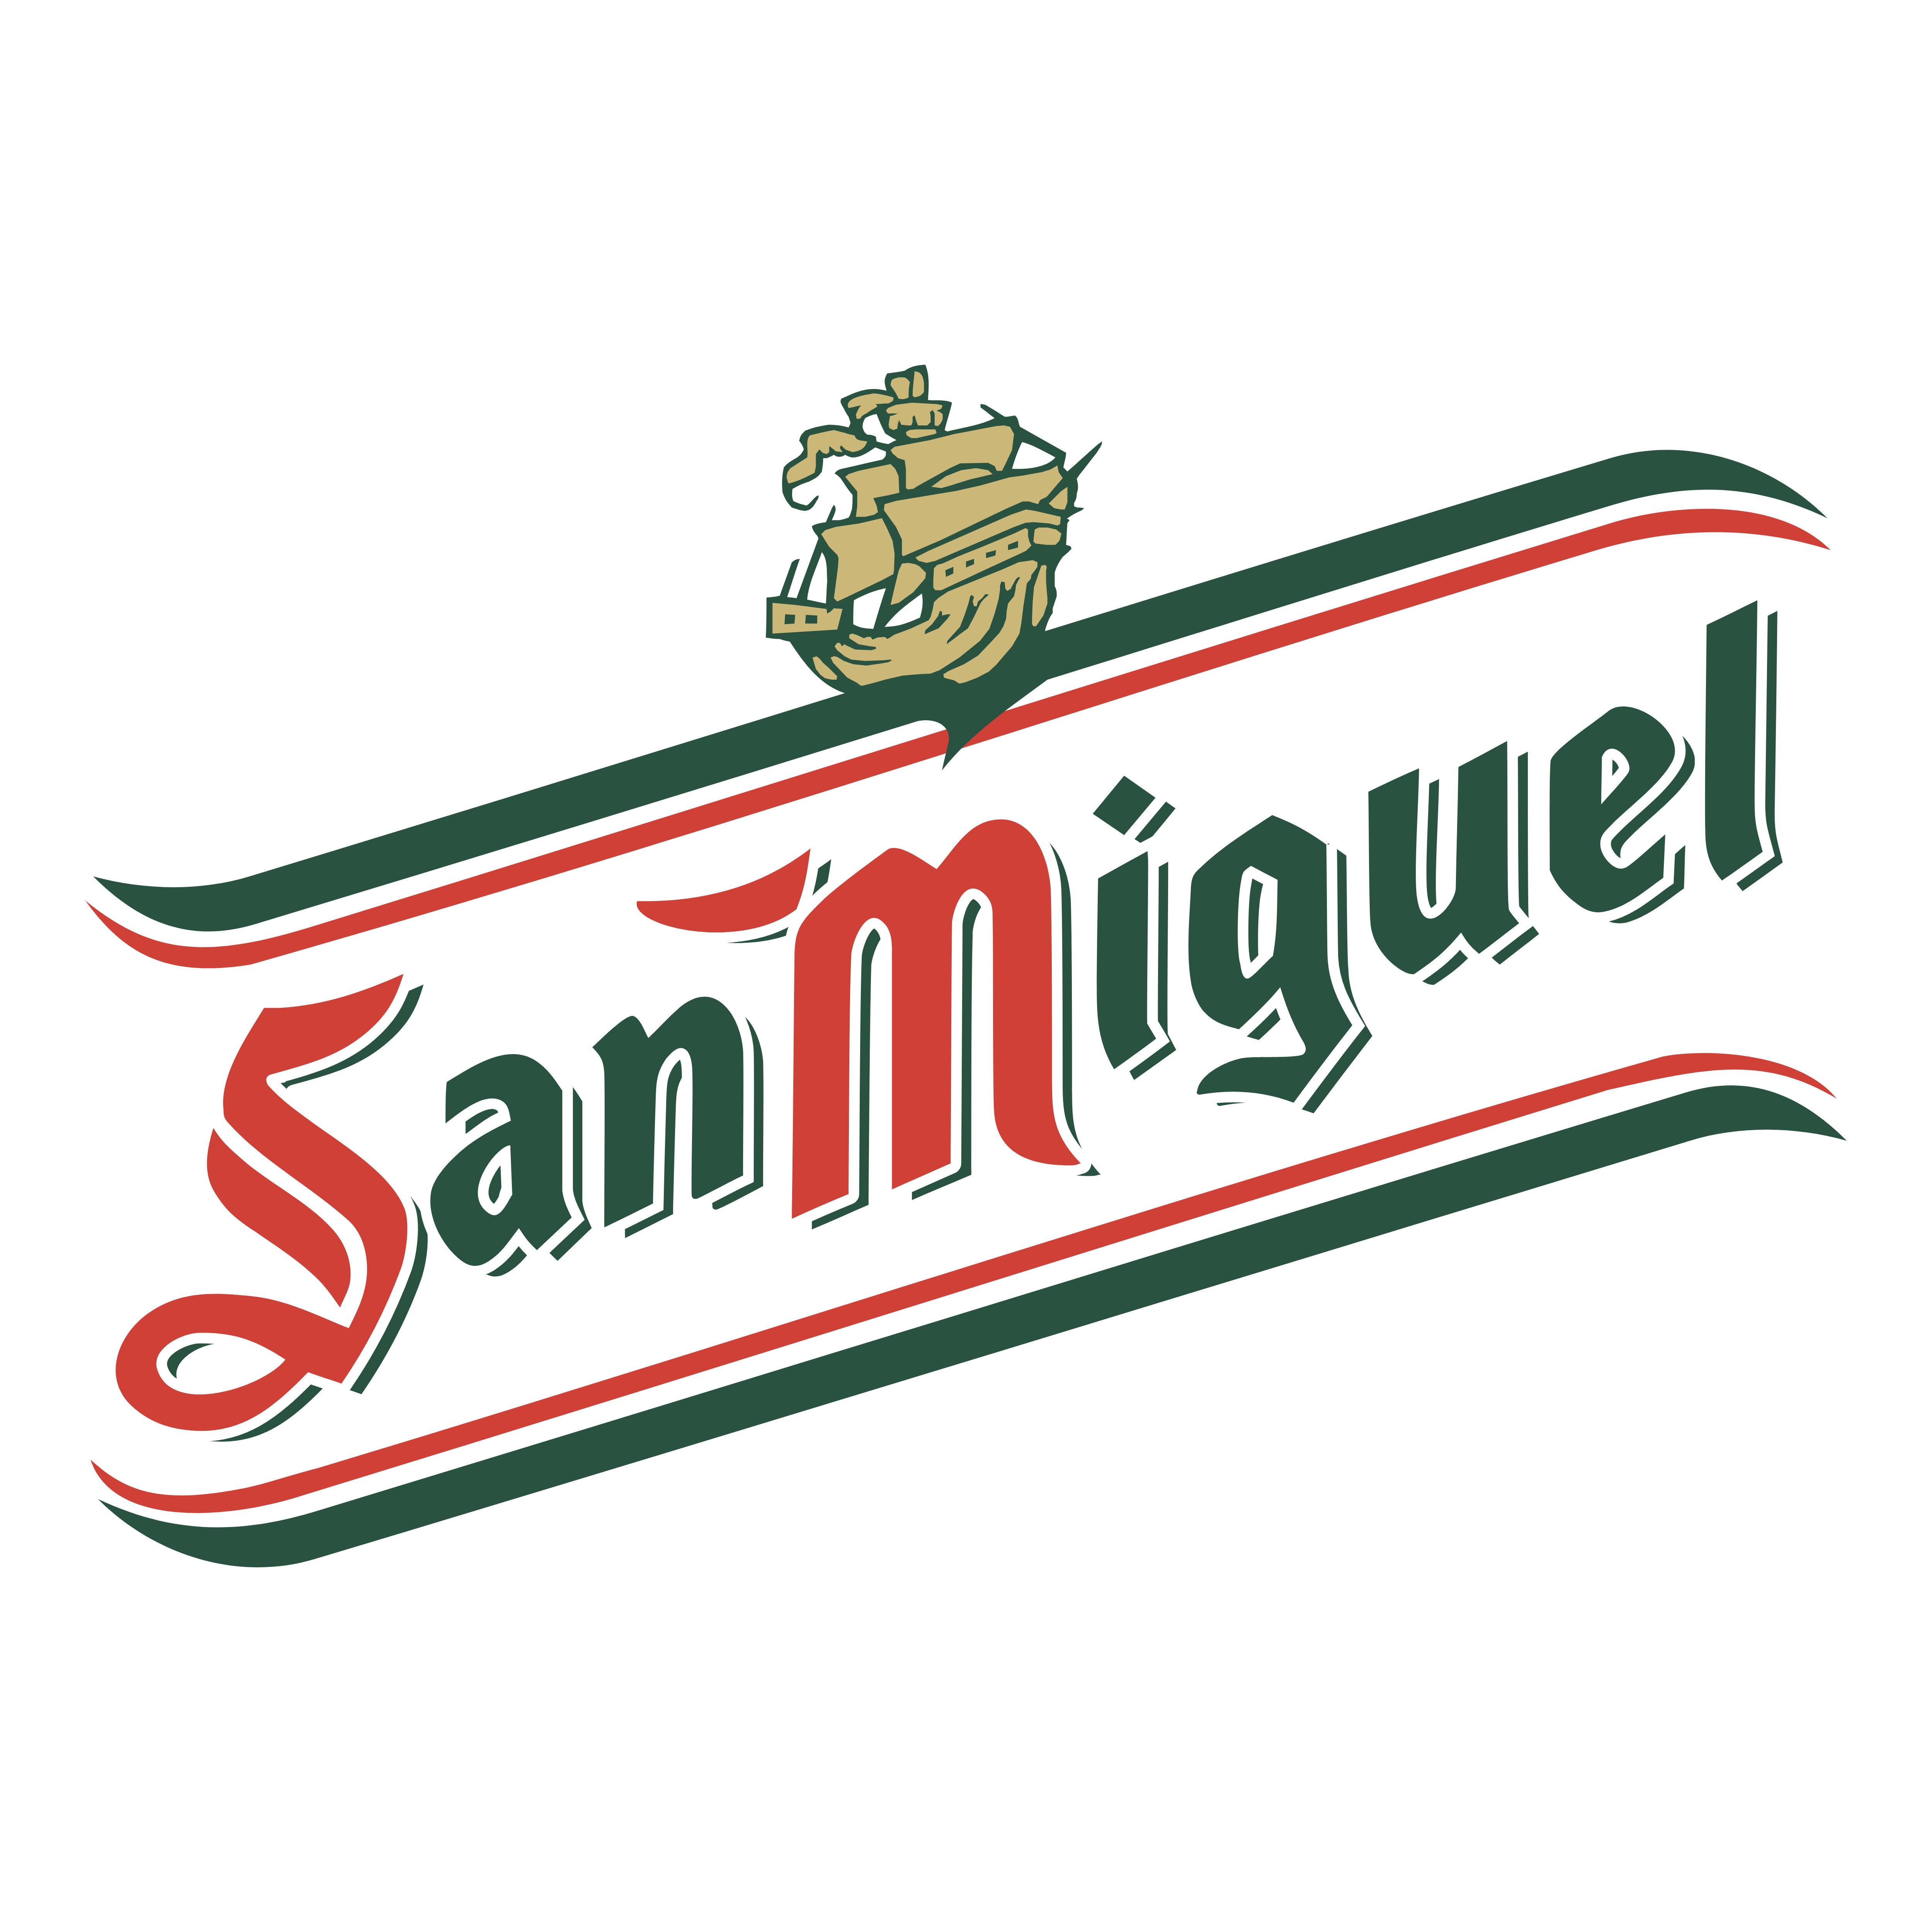 Miguel Logo - San Miguel – Logos Download